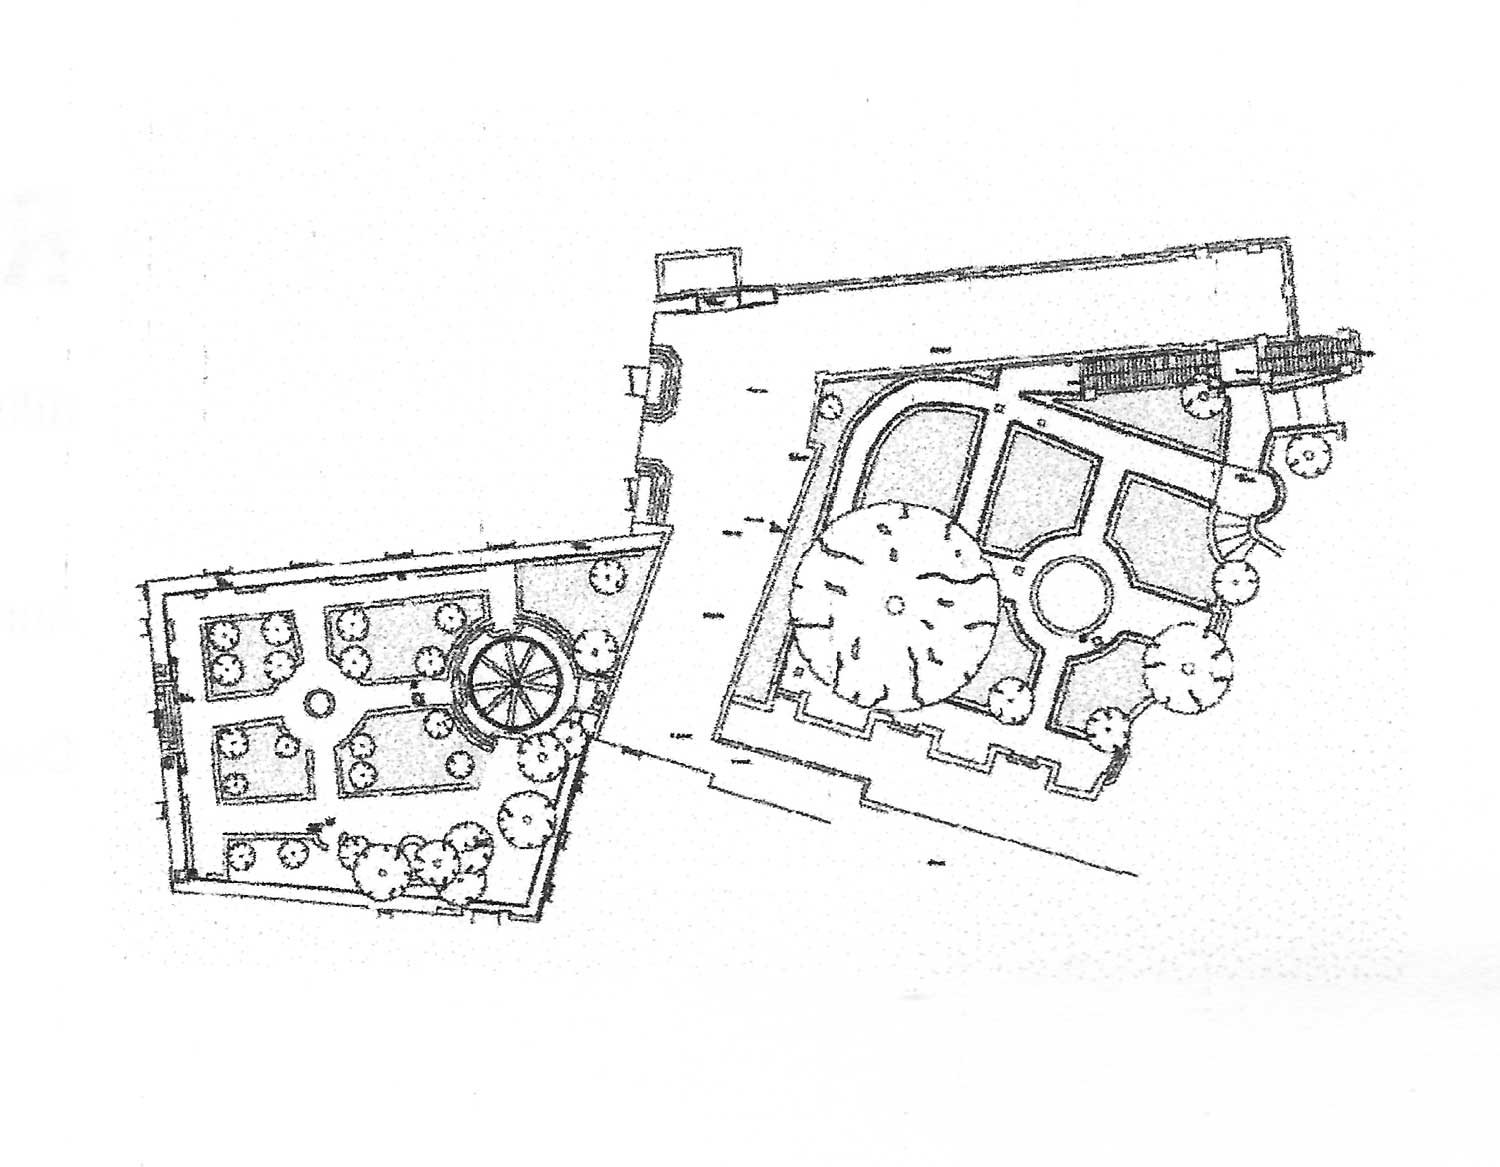 13 - Rilievi diretti e strumentali del Giardino Romano al Campidoglio, Roma - Planimetria generale